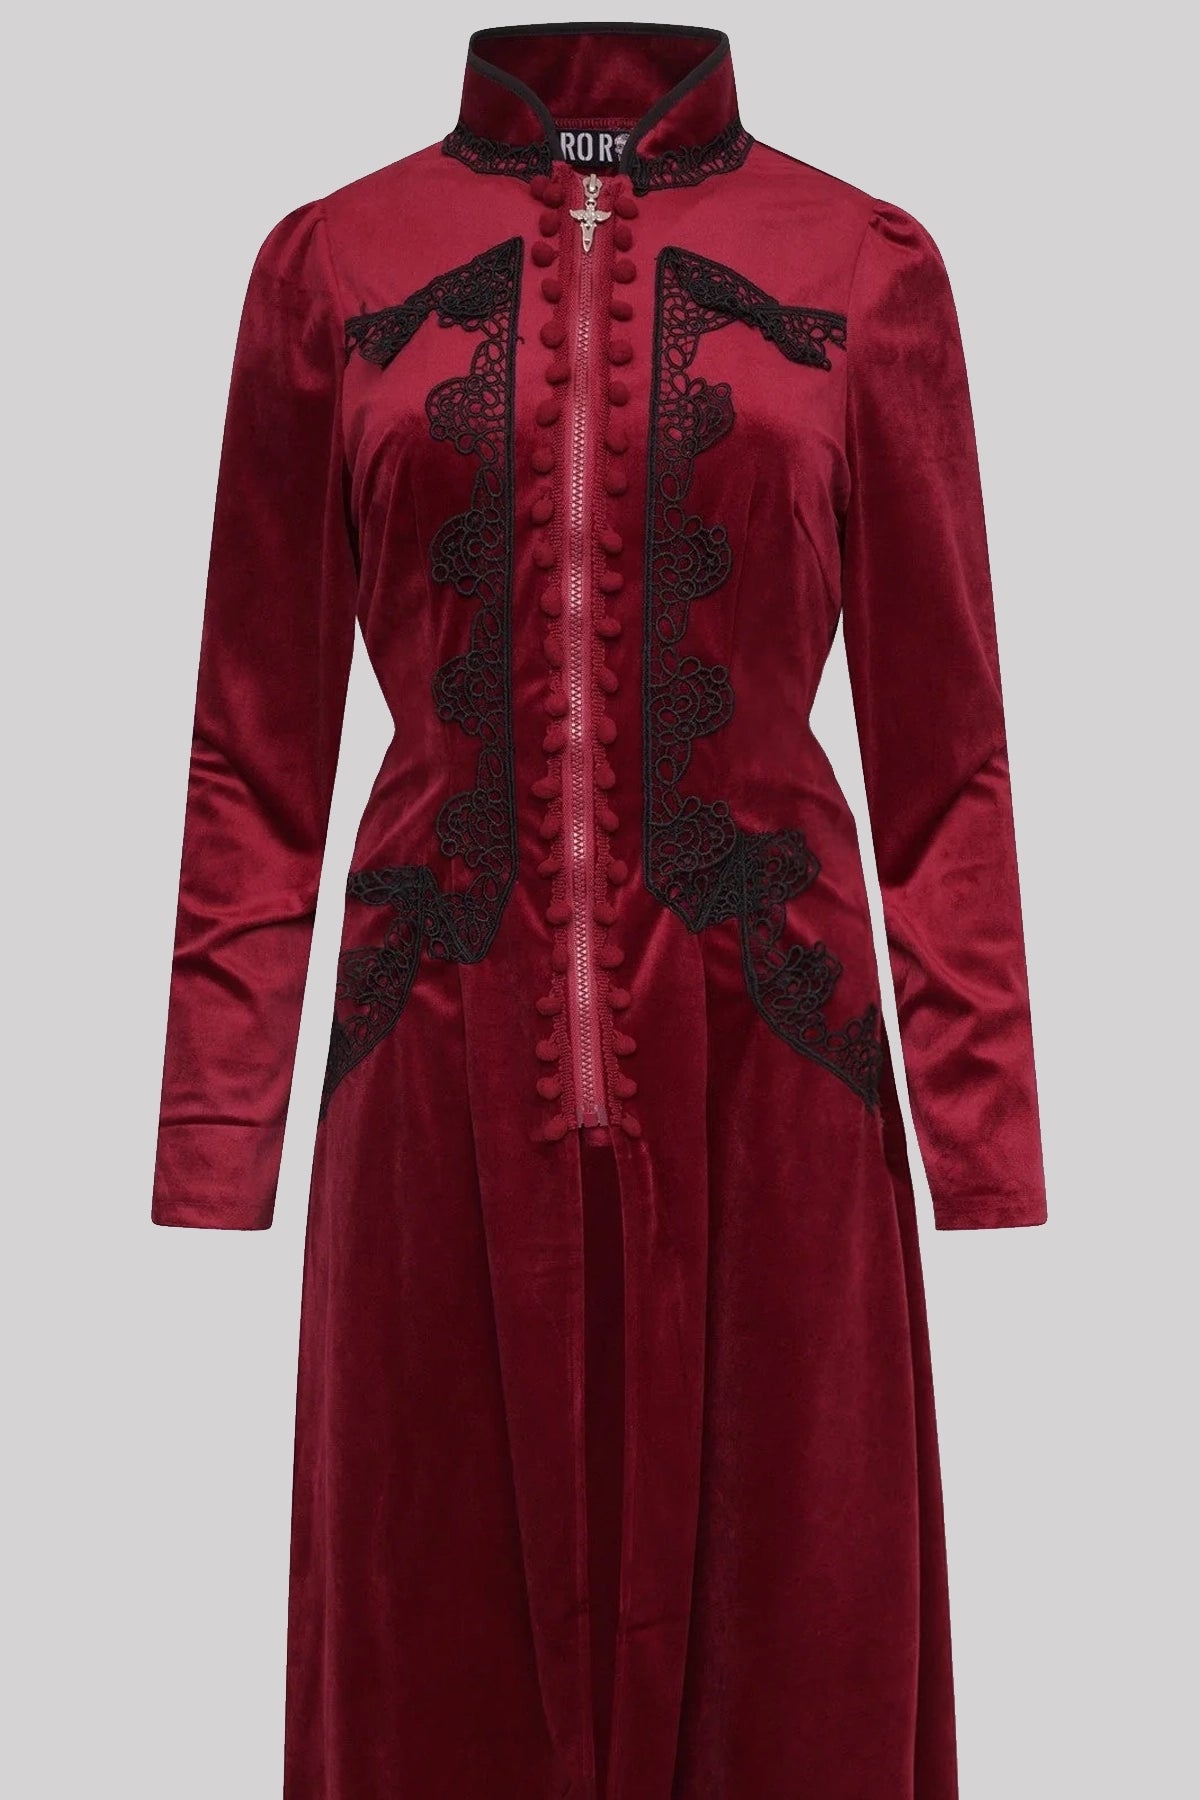 Ro Rox Celeste High Collar Long Sleeve Gothic Velvet Coat, Burgundy